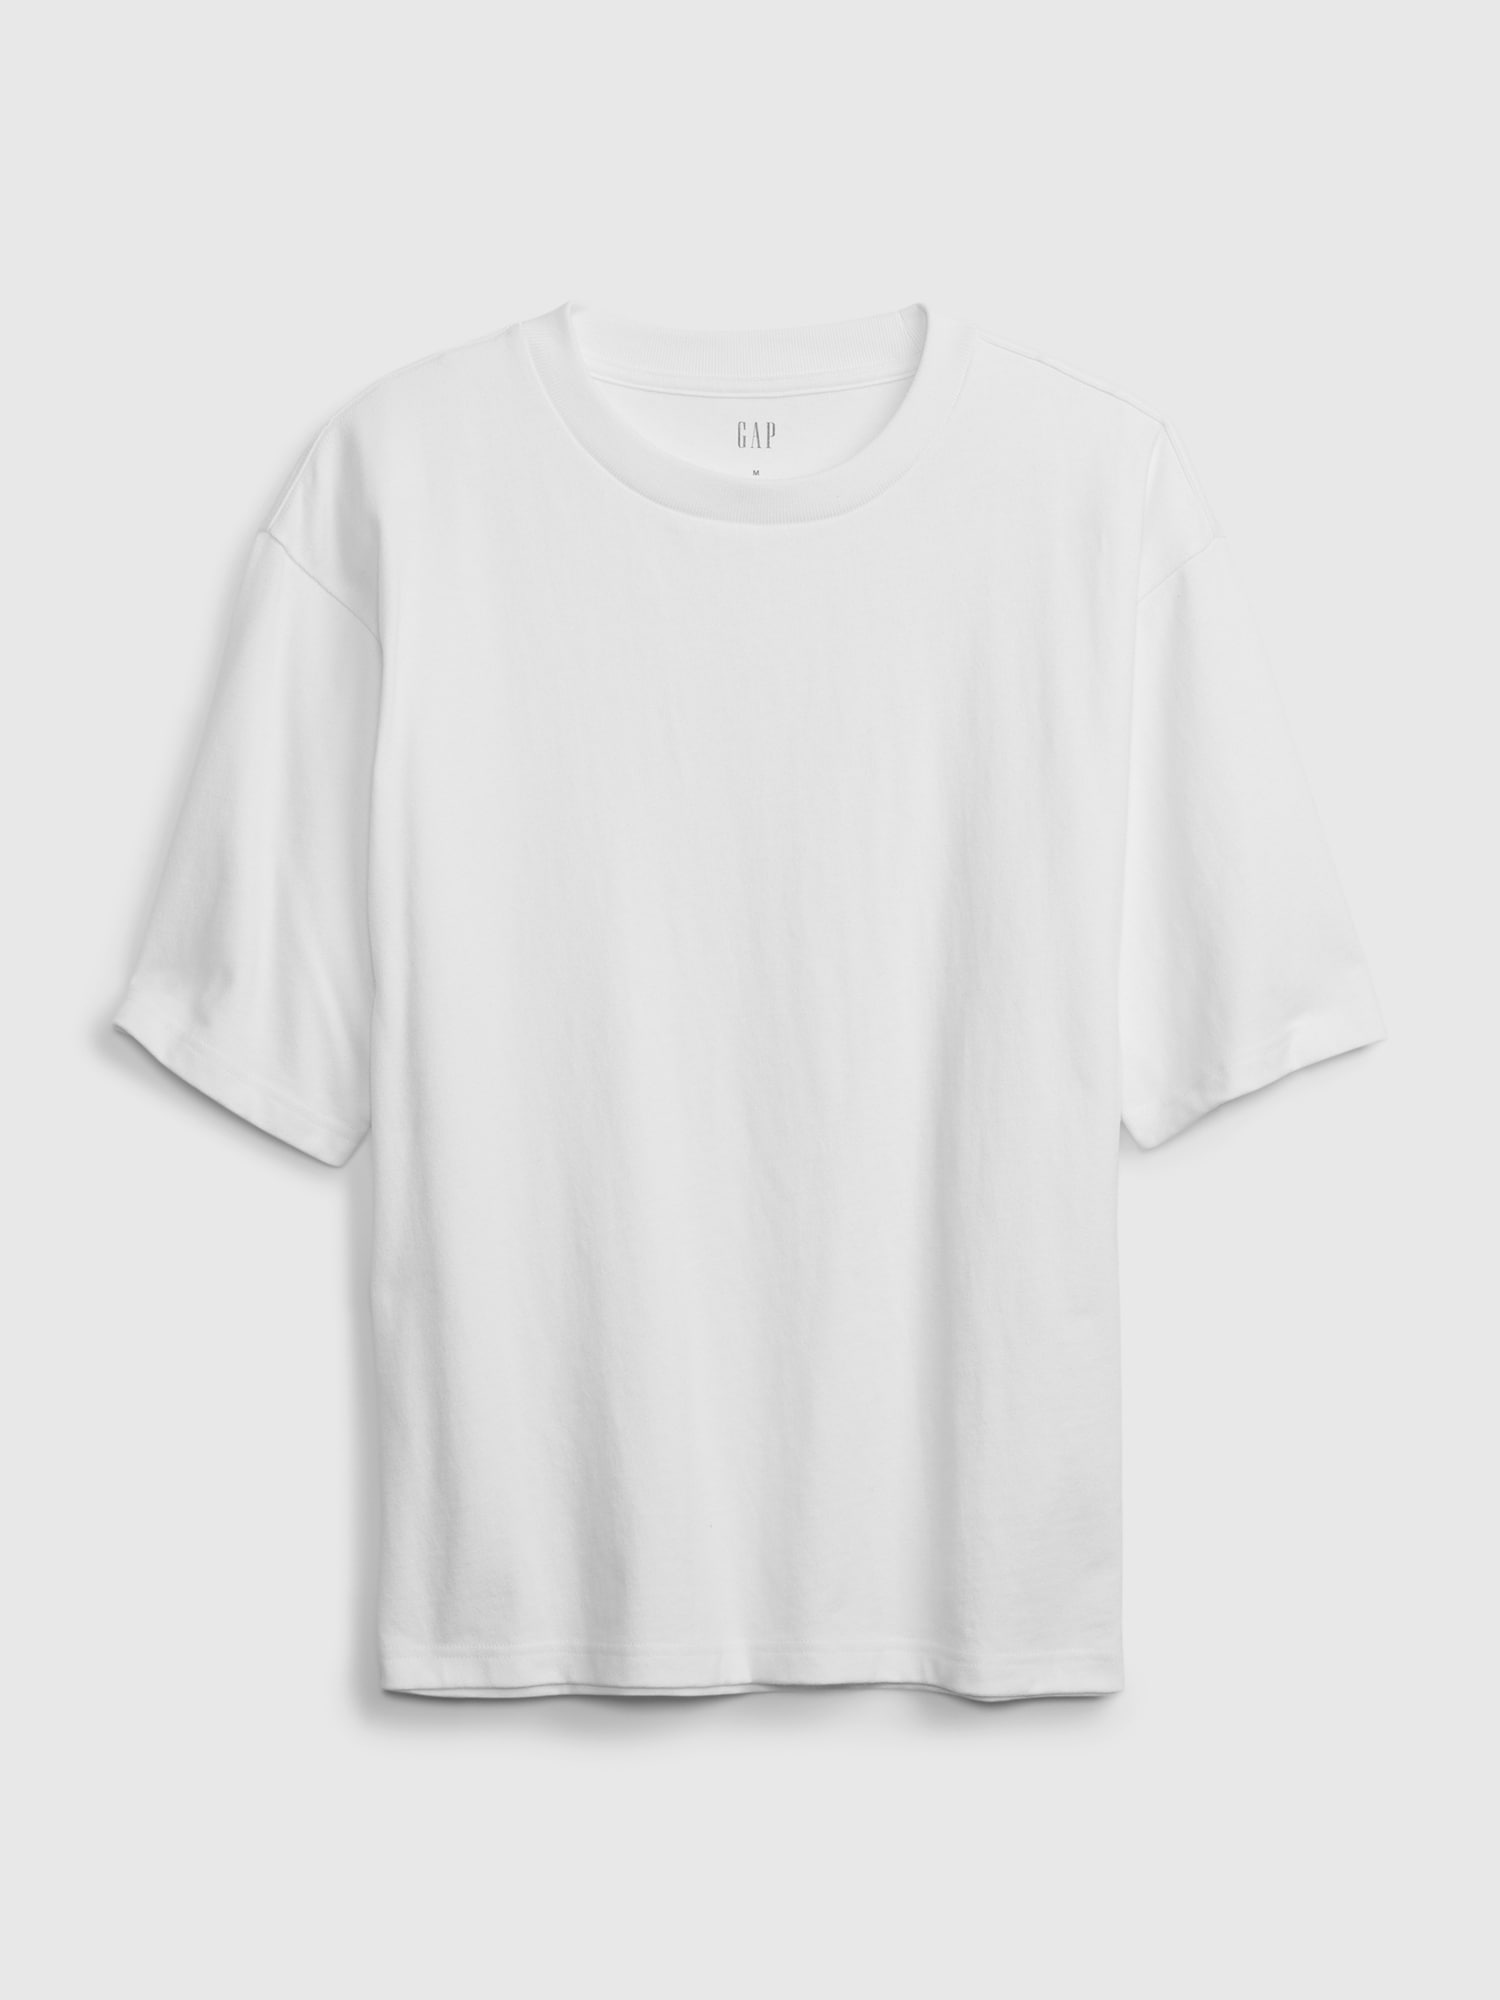 “オーバーサイズ” old gap カレッジロゴ プリント Tシャツ XXL